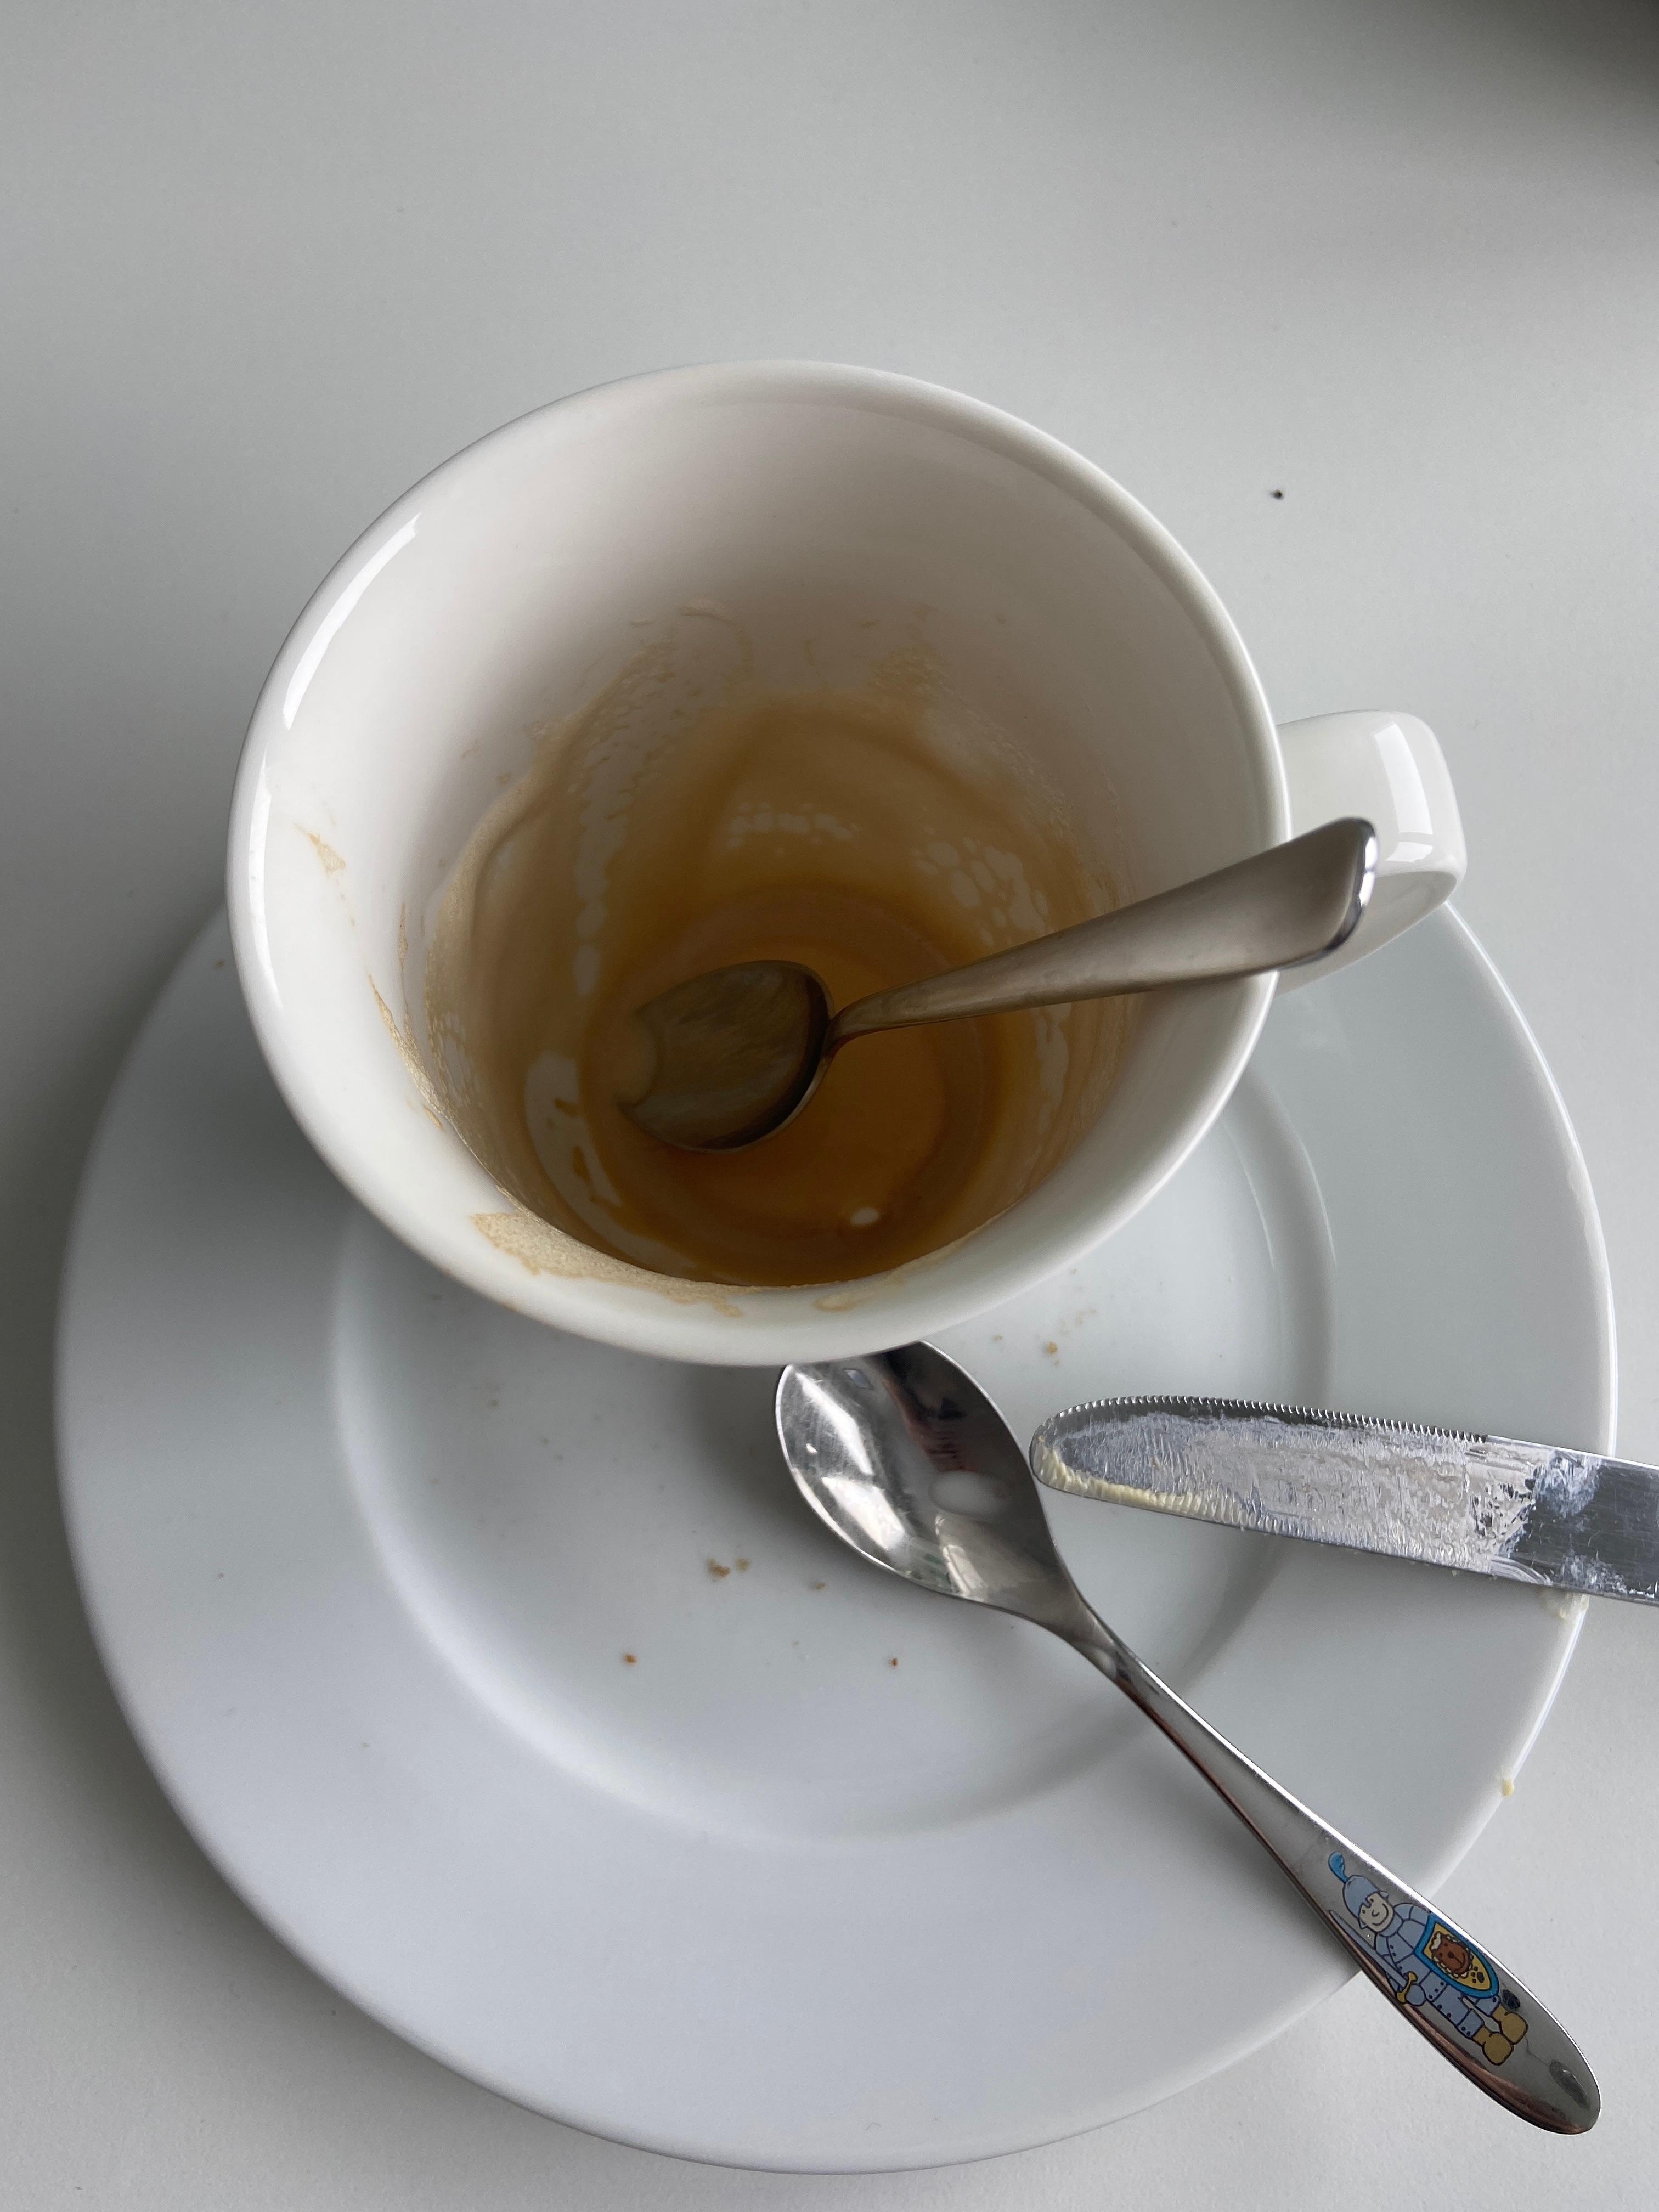 #coffeelover #foodchallenge der Cappuccino ist gerade ausgetrunken und das Brot aufgegessen 